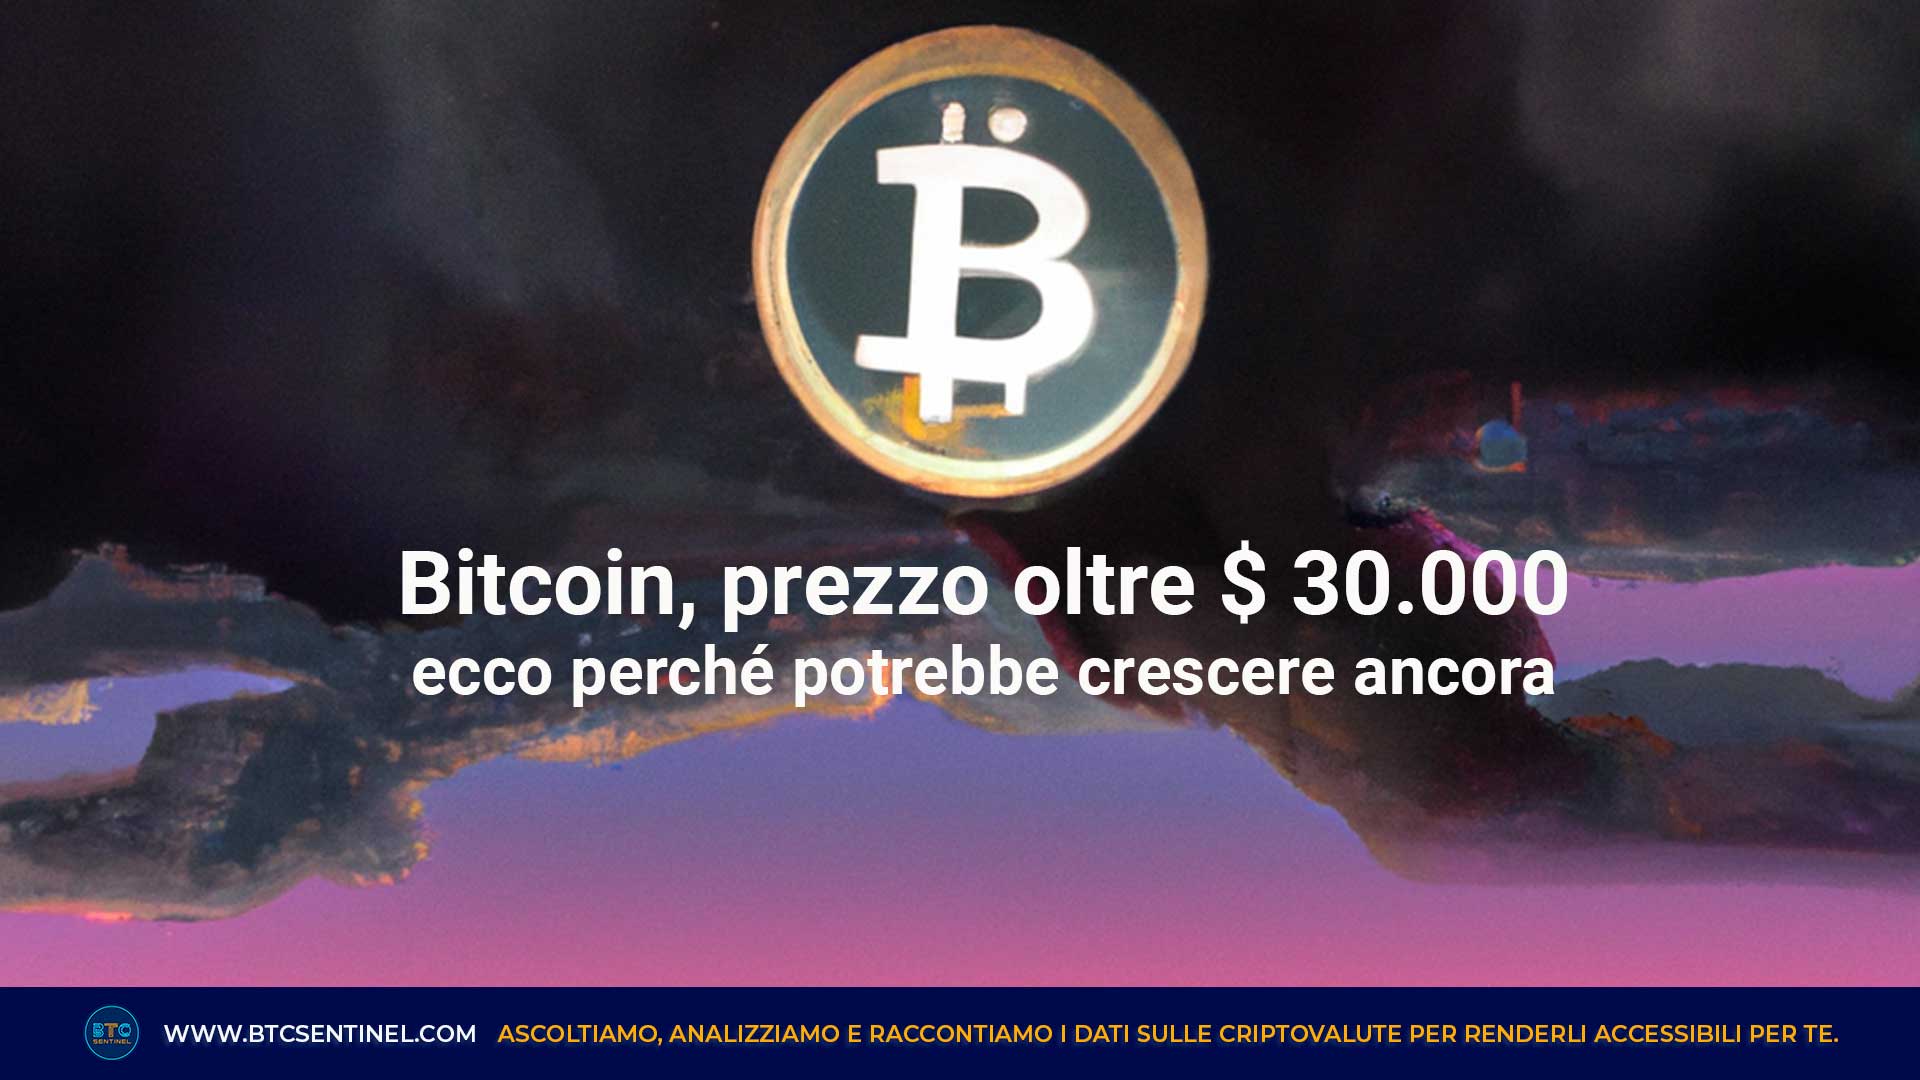 Bitcoin: prezzo oltre $ 30.000 e potrebbe crescere ancora